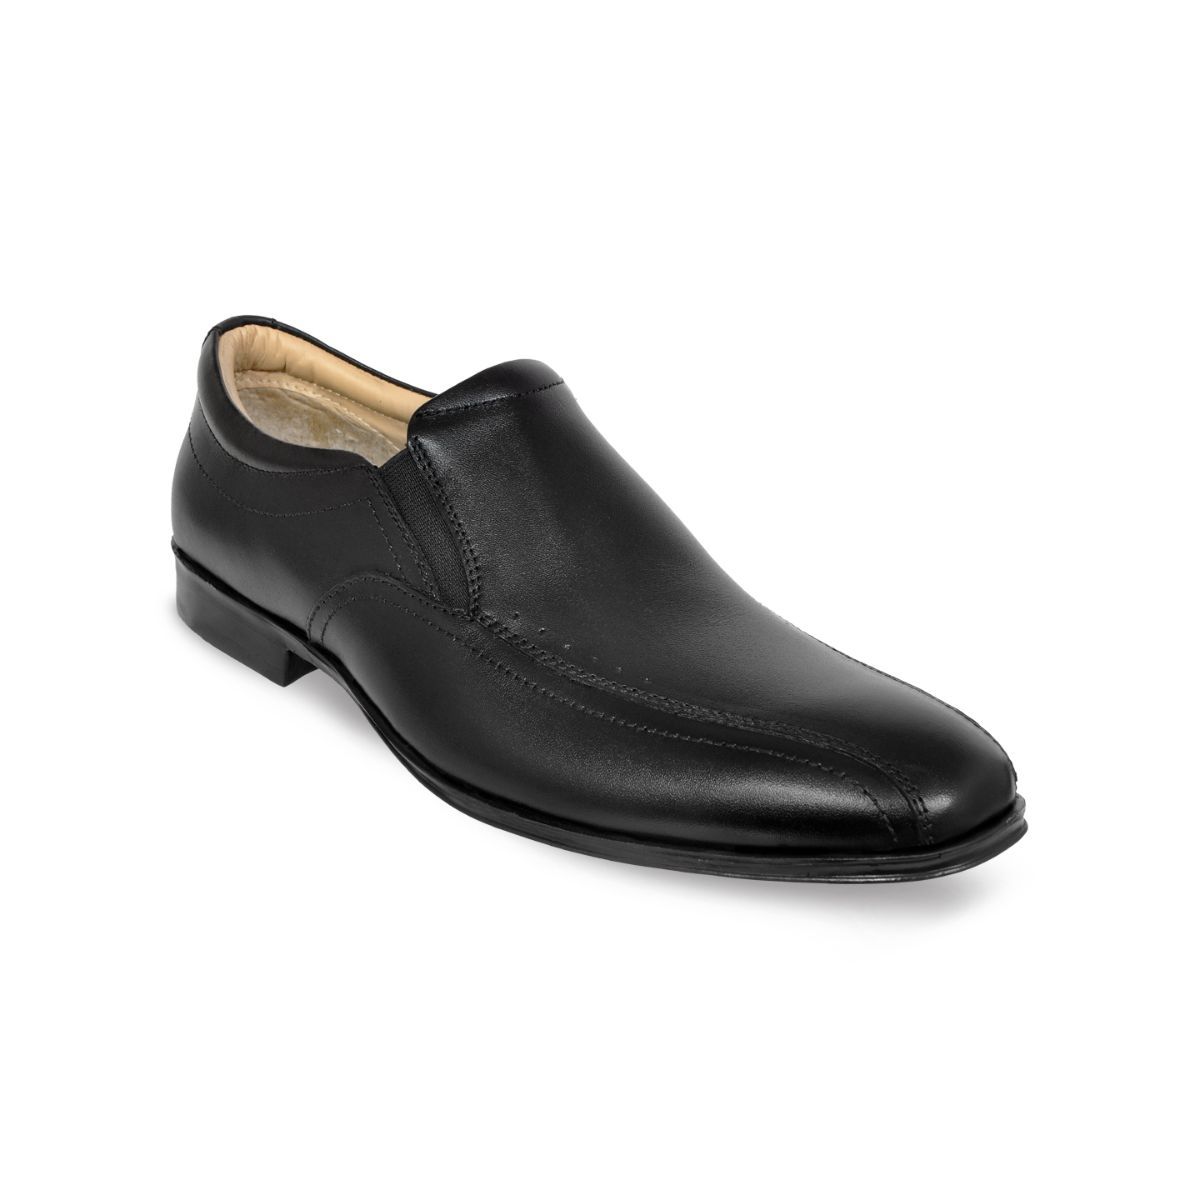 Allen Cooper Black Formal Shoes For Men - 10